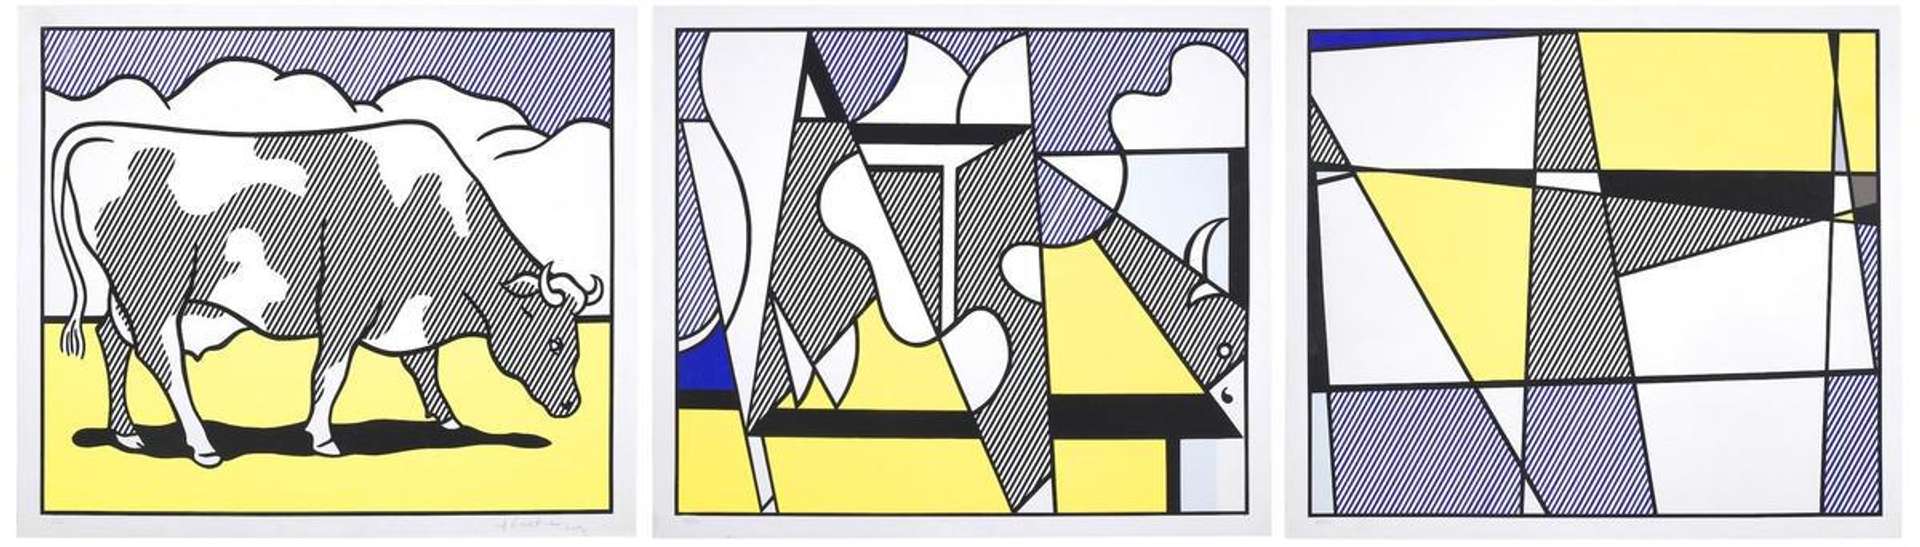 Cow Going Abstract by Roy Lichtenstein - MyArtBroker